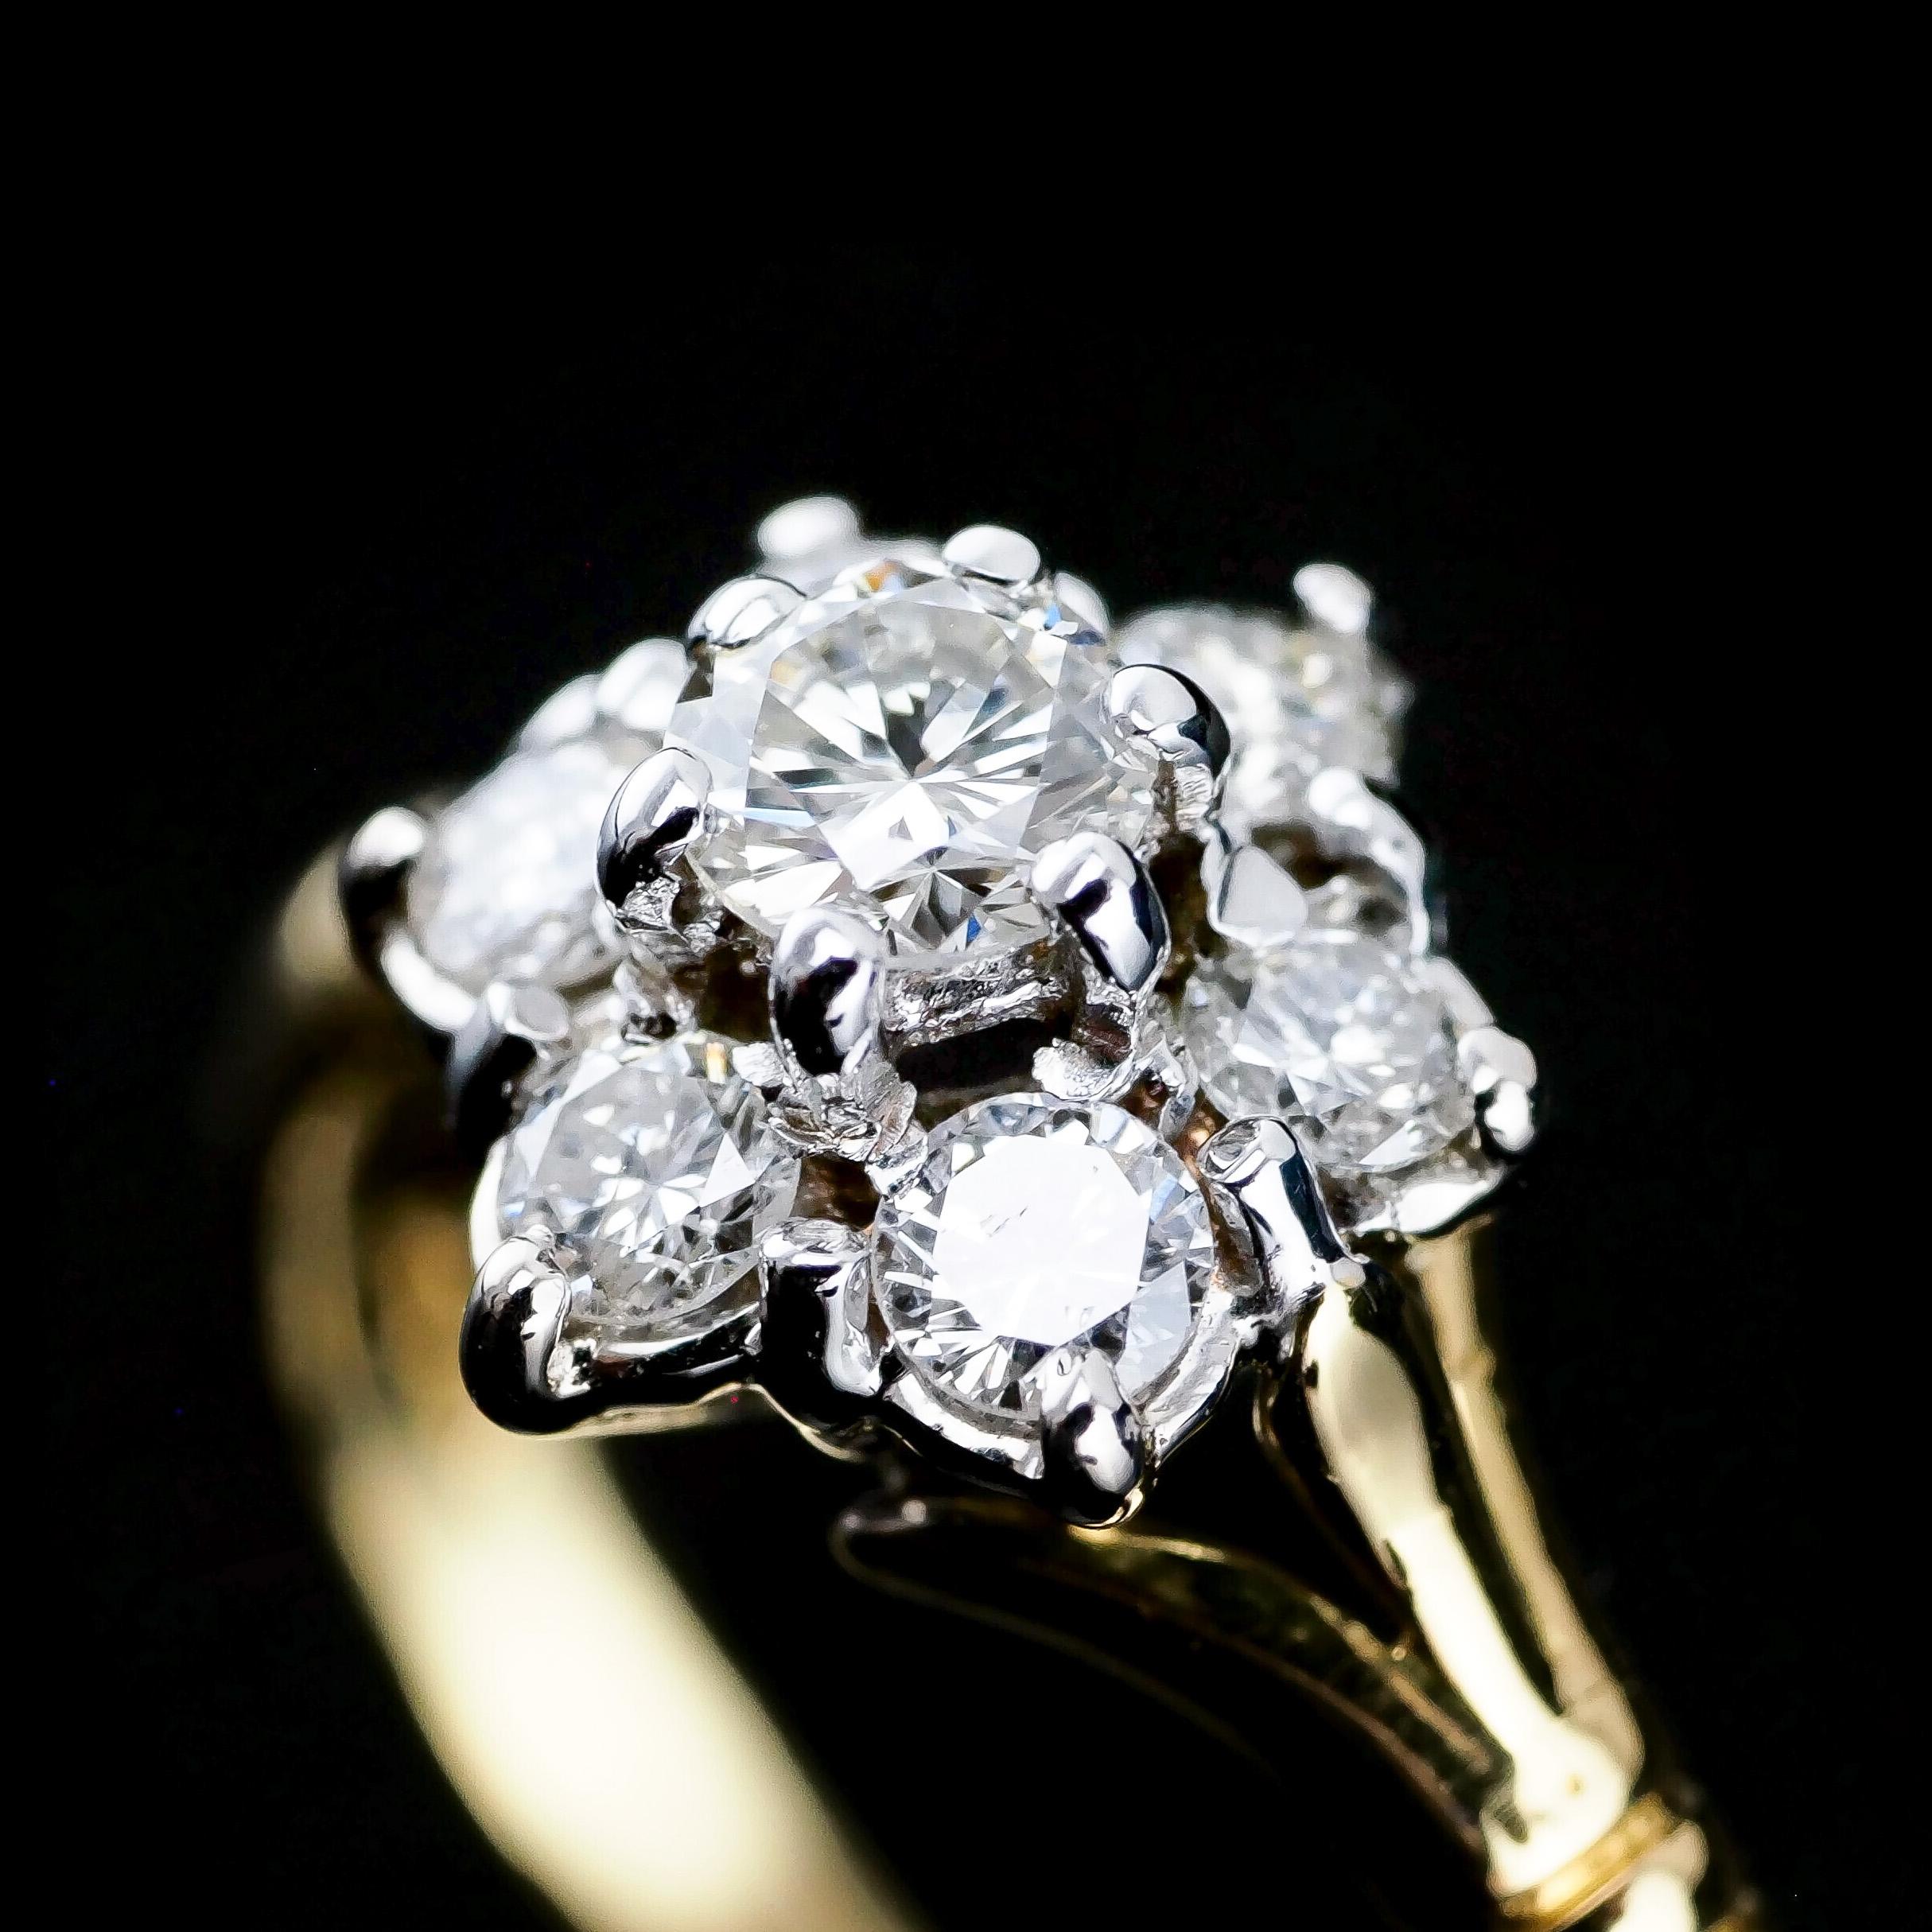 Wir freuen uns, Ihnen diesen wunderschönen Vintage-Ring aus 18 Karat Gold mit Diamanten anbieten zu können.

Der Ring besteht aus einem Diamanten im Brillantrundschliff, der von 6 etwas kleineren Diamanten gleicher Farbe/Klarheit, ebenfalls im